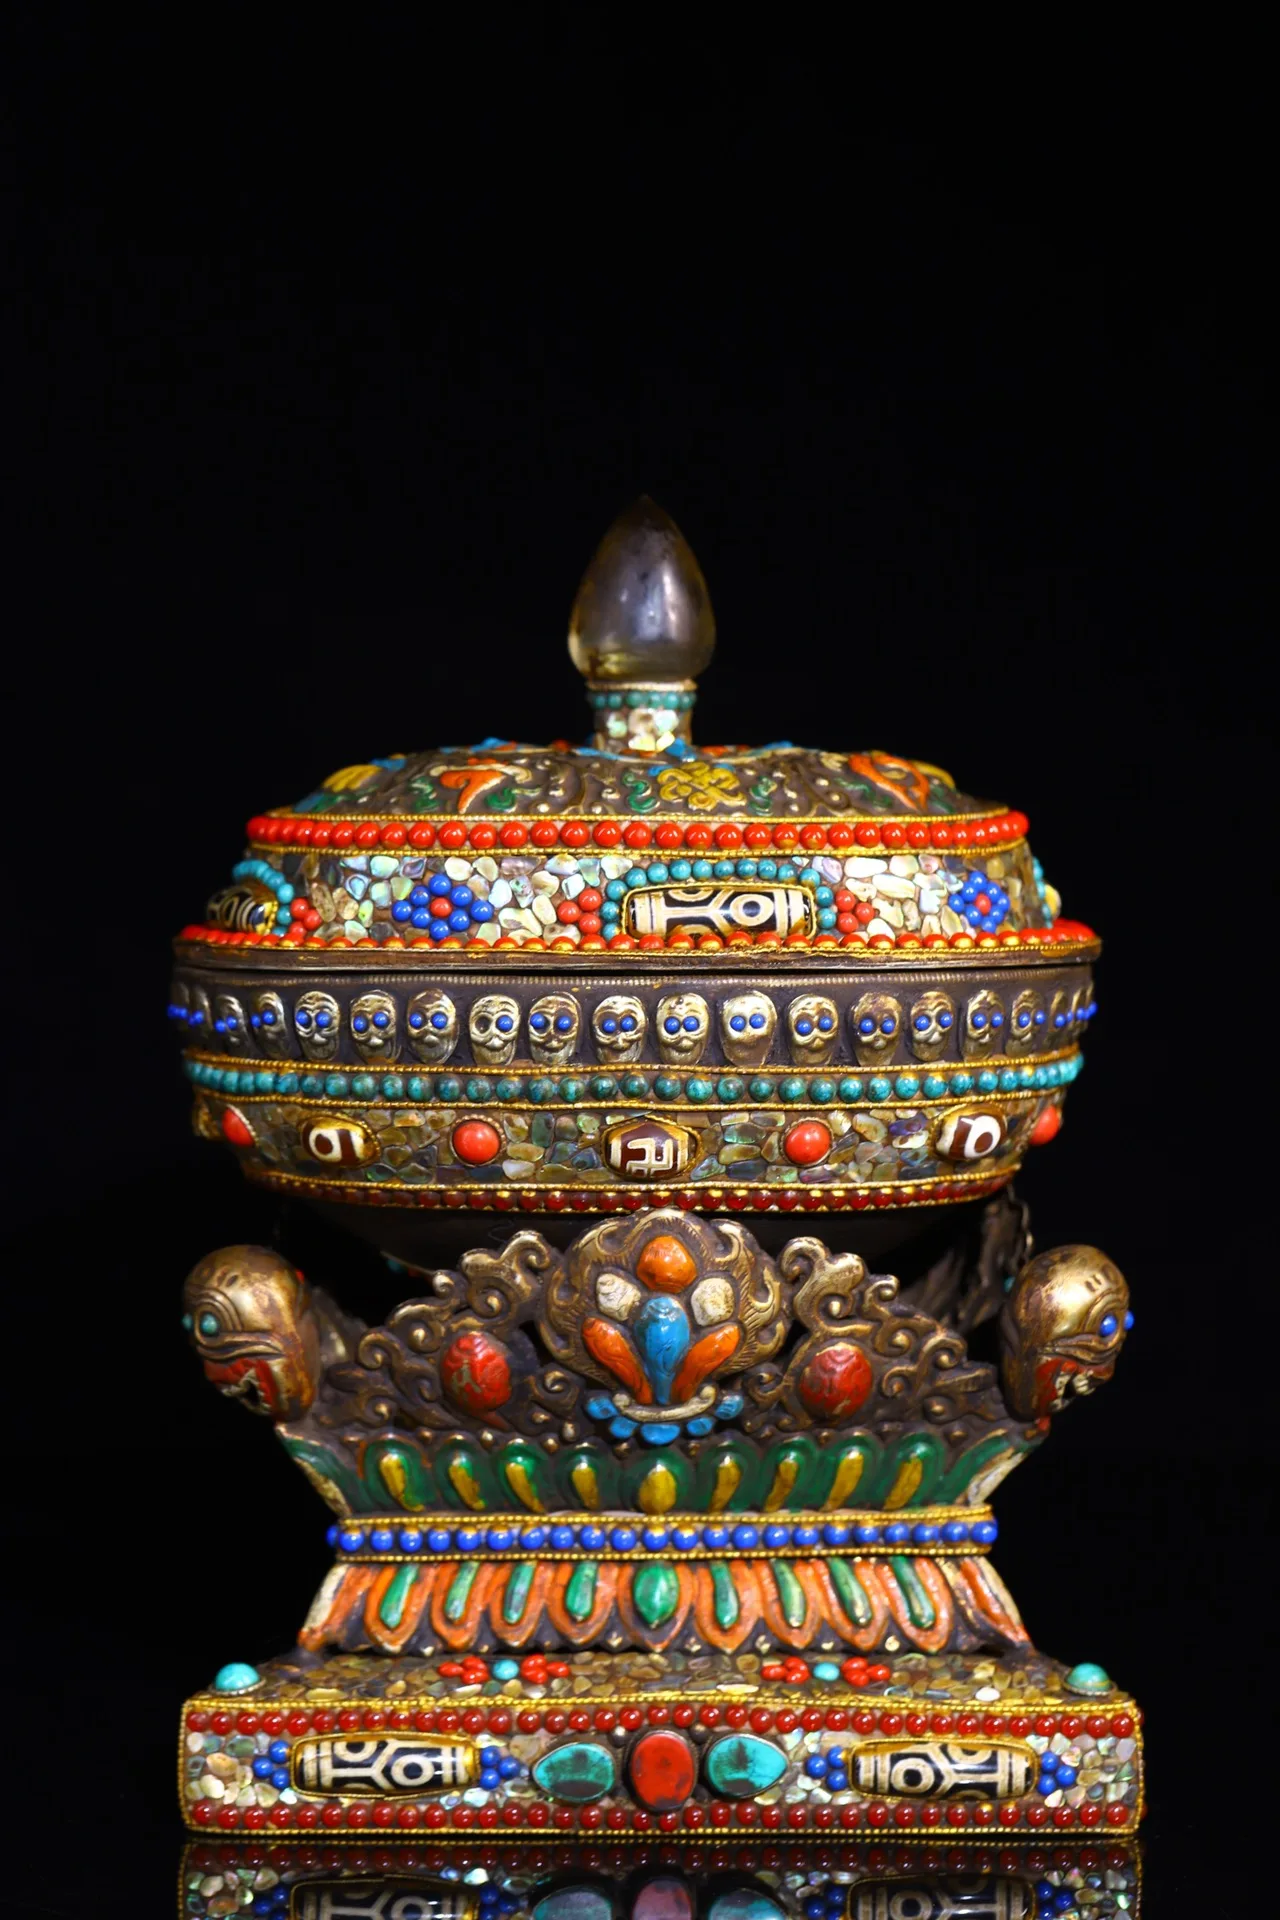 

Коллекция тибетских храмов 9 дюймов, старое тибетское серебряное позолота, мозаика с драгоценным камнем, ракушка, миска Габала, крышка с черепом, набор для поклонения в зале